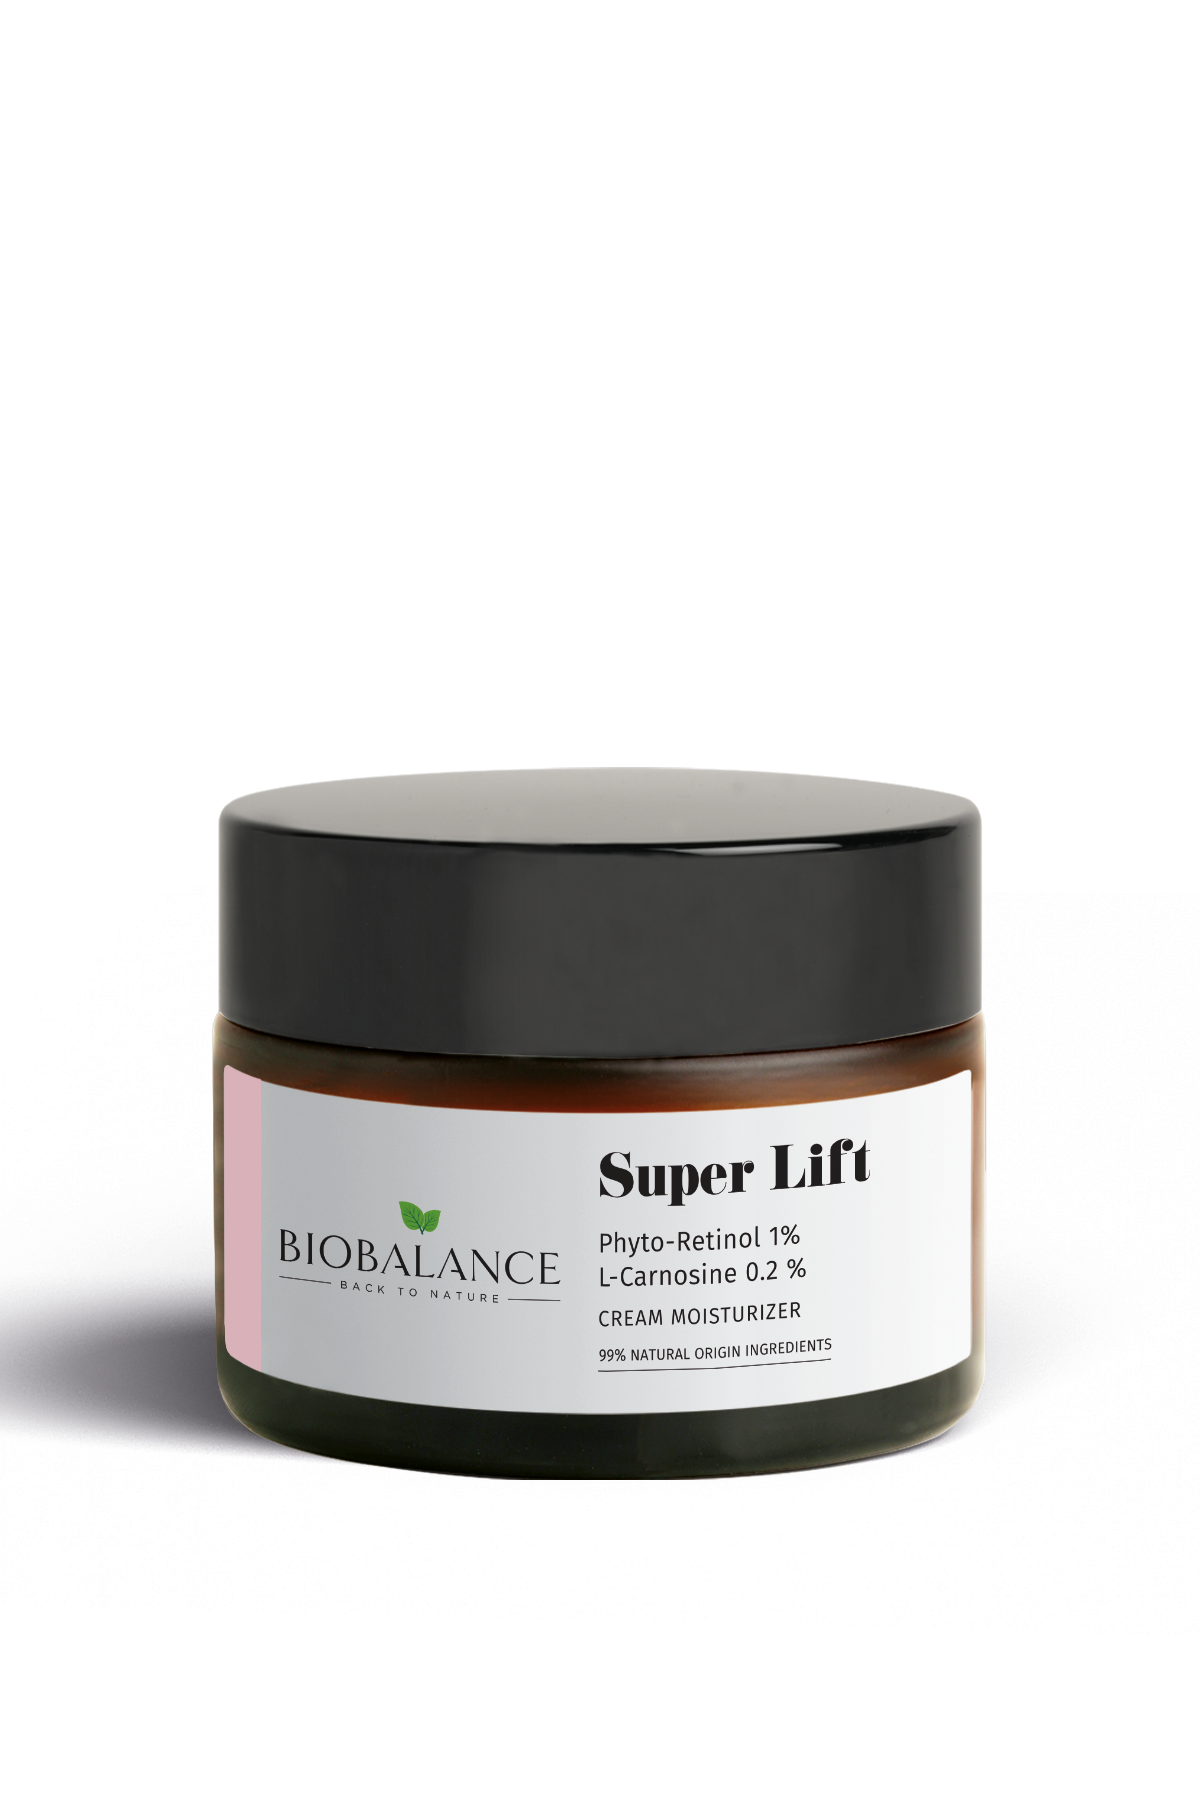 super-lift-cream-moisturizercf154a22-57ac-4aba-a611-5b68c82df346.png